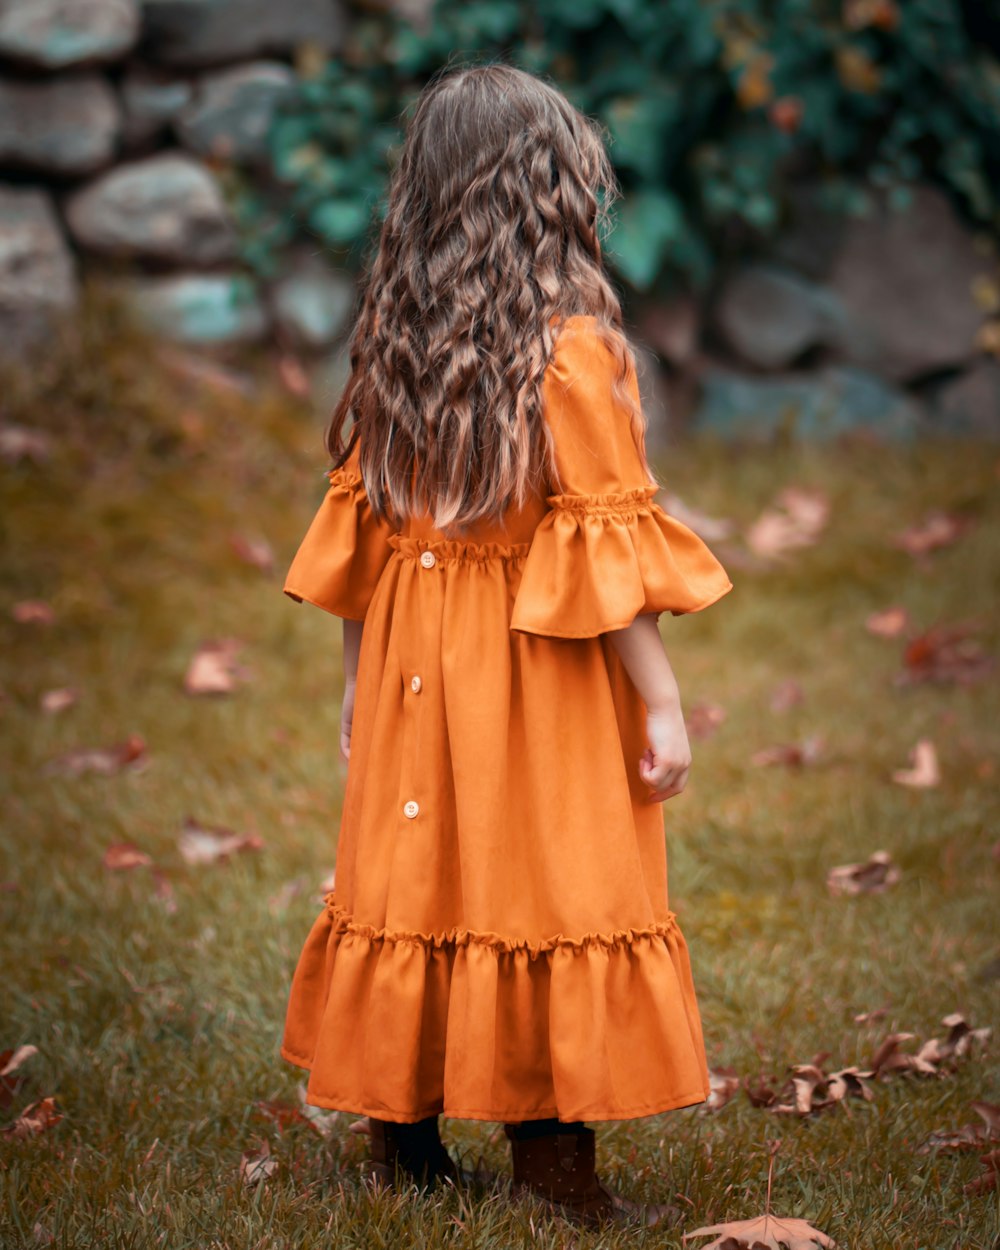 girl wearing orange dress